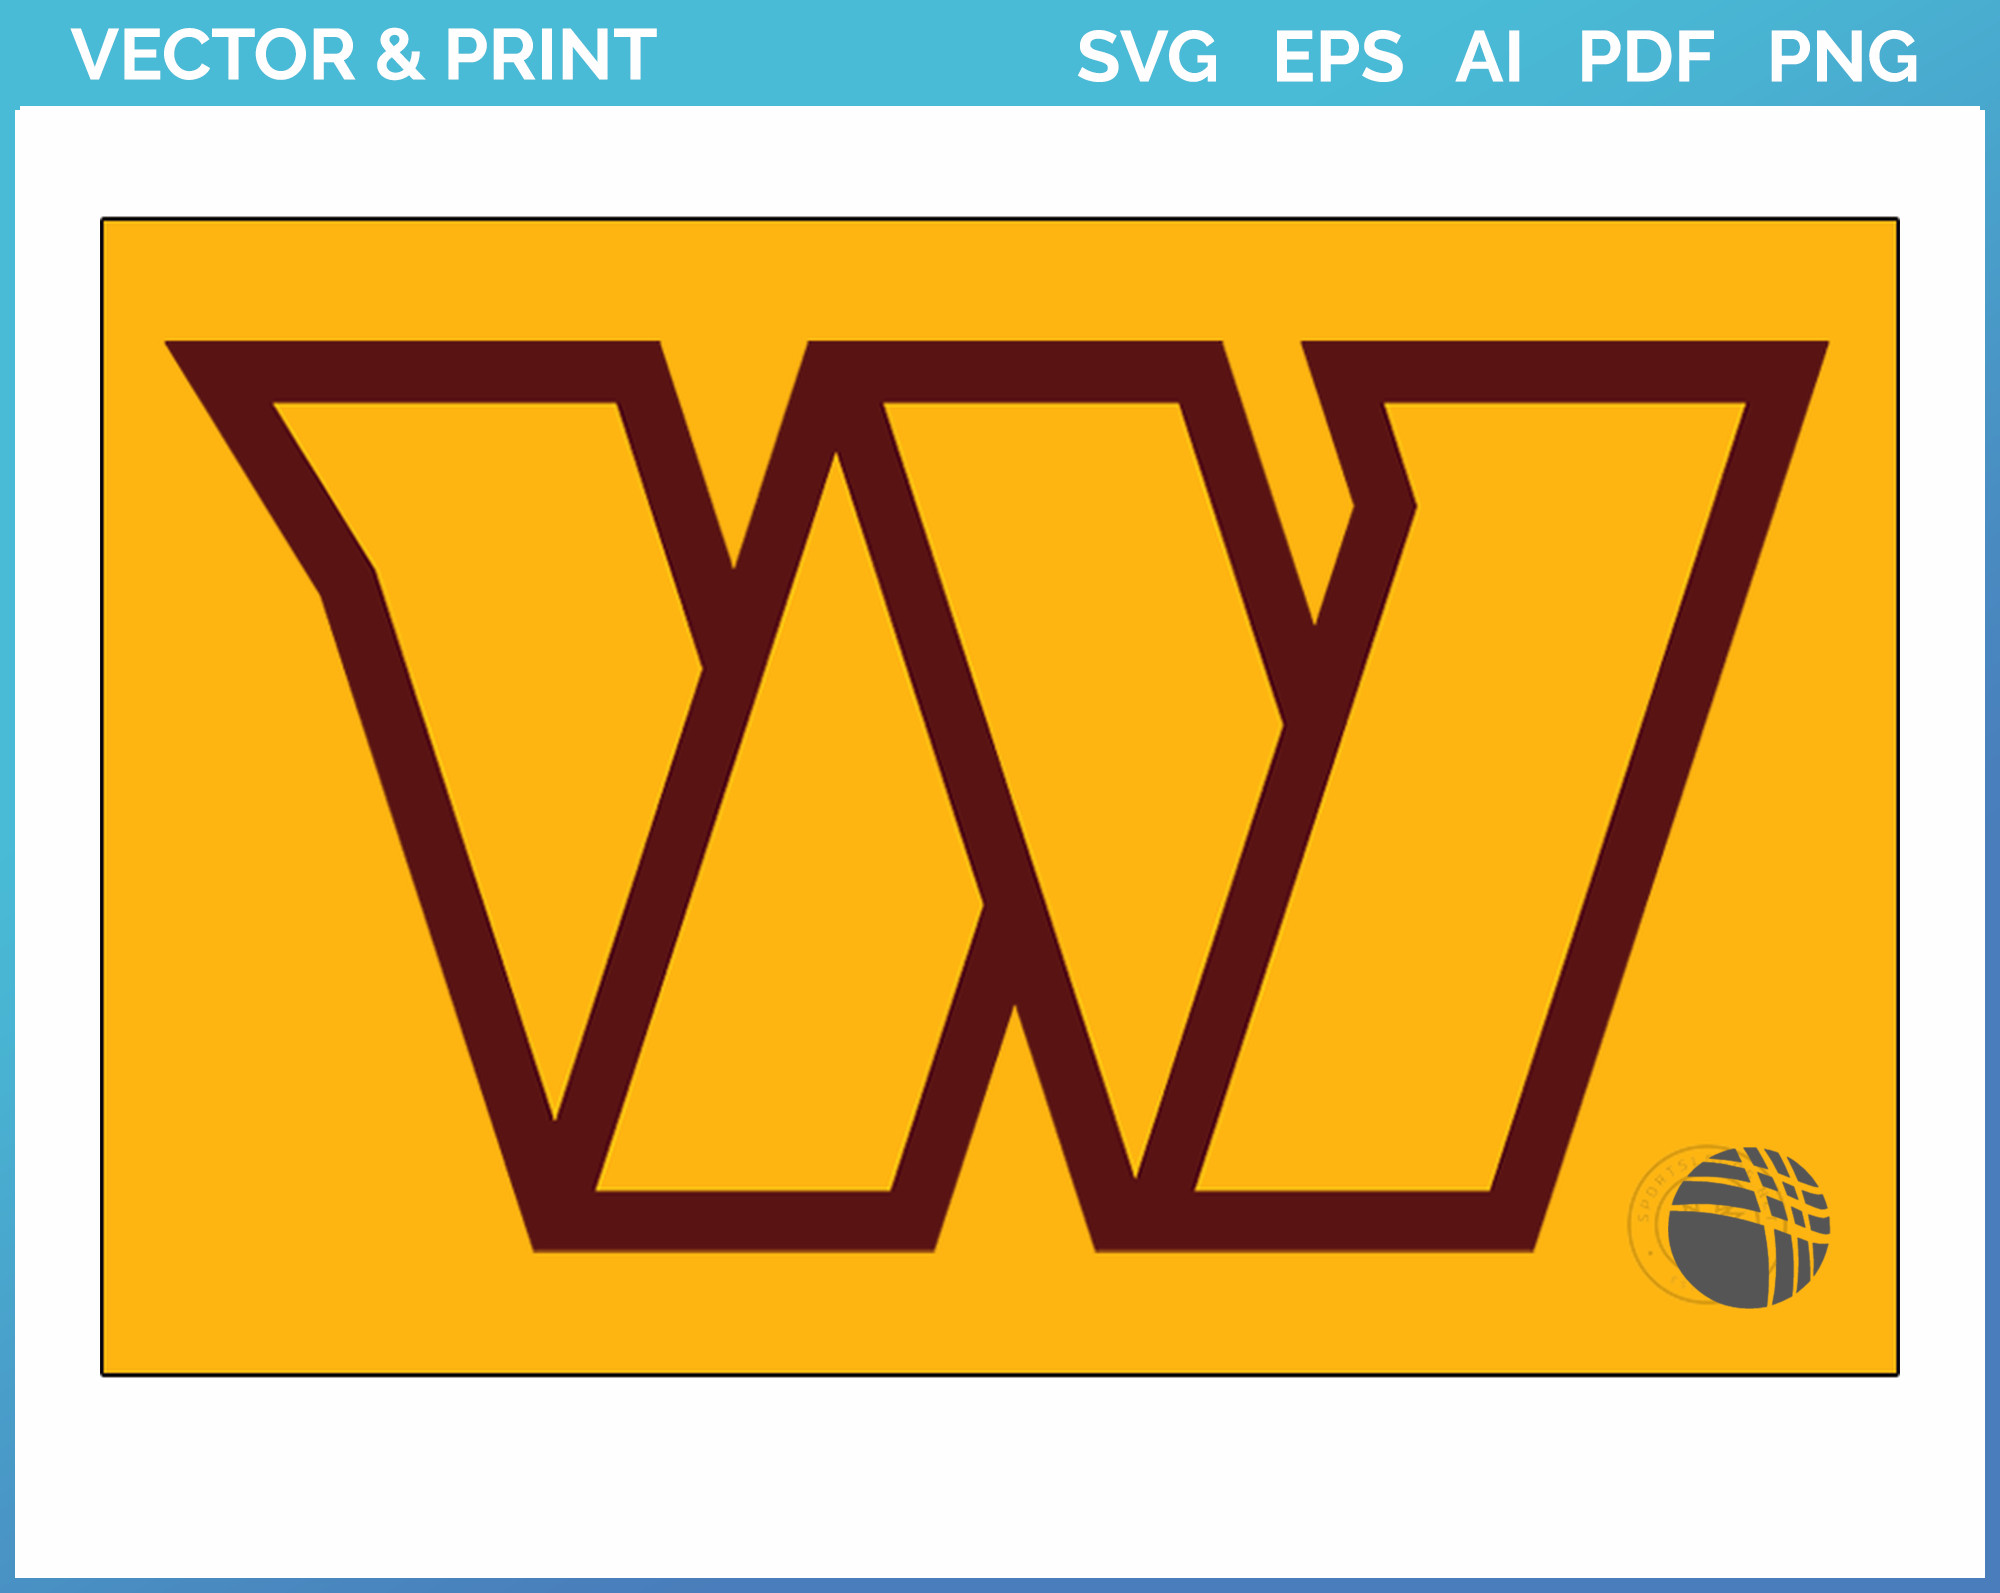 w88.com Logo PNG Vector (PDF) Free Download